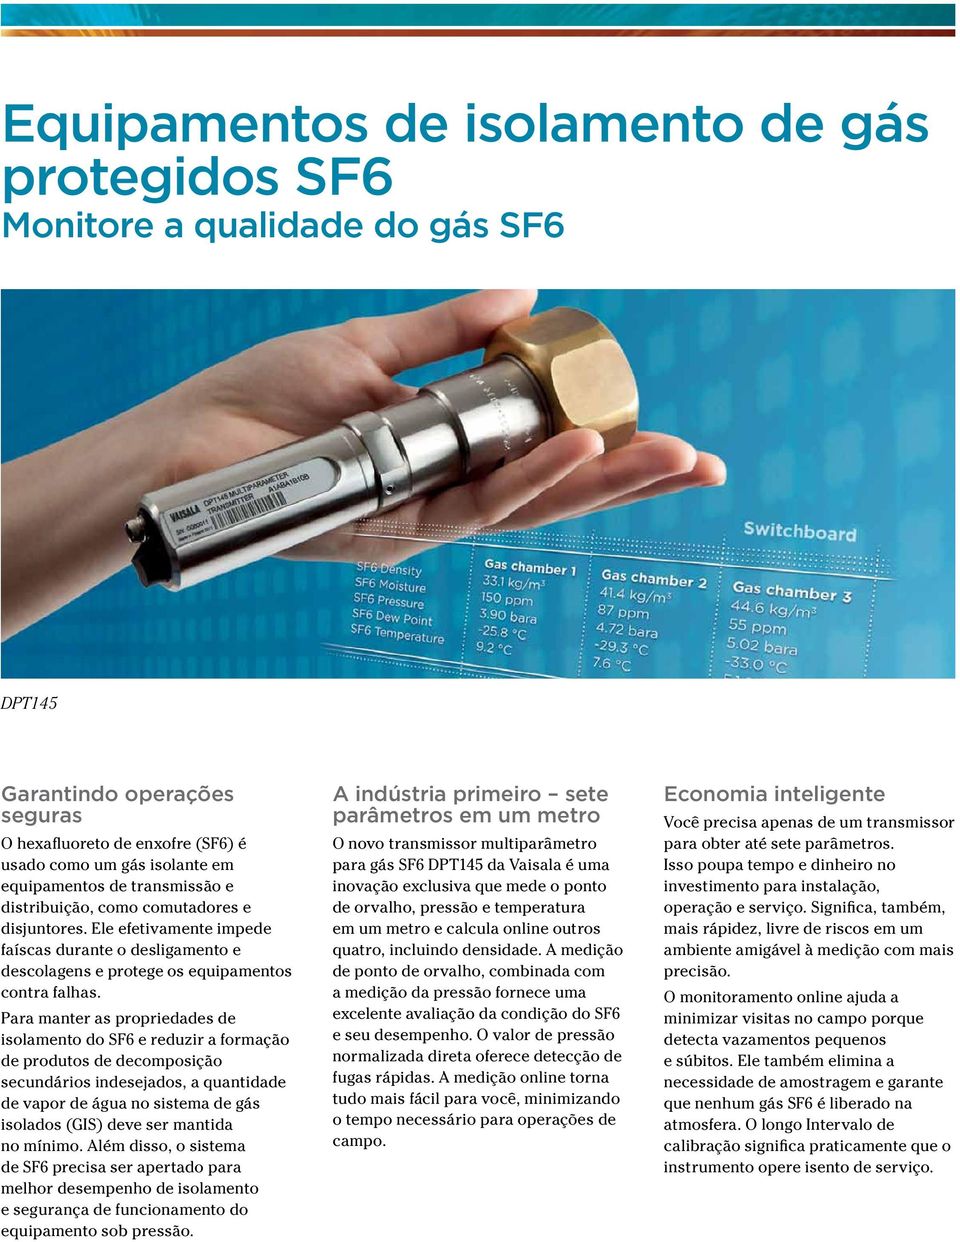 Para manter as propriedades de isolamento do SF6 e reduzir a formação de produtos de decomposição secundários indesejados, a quantidade de vapor de água no sistema de gás isolados (GIS) deve ser